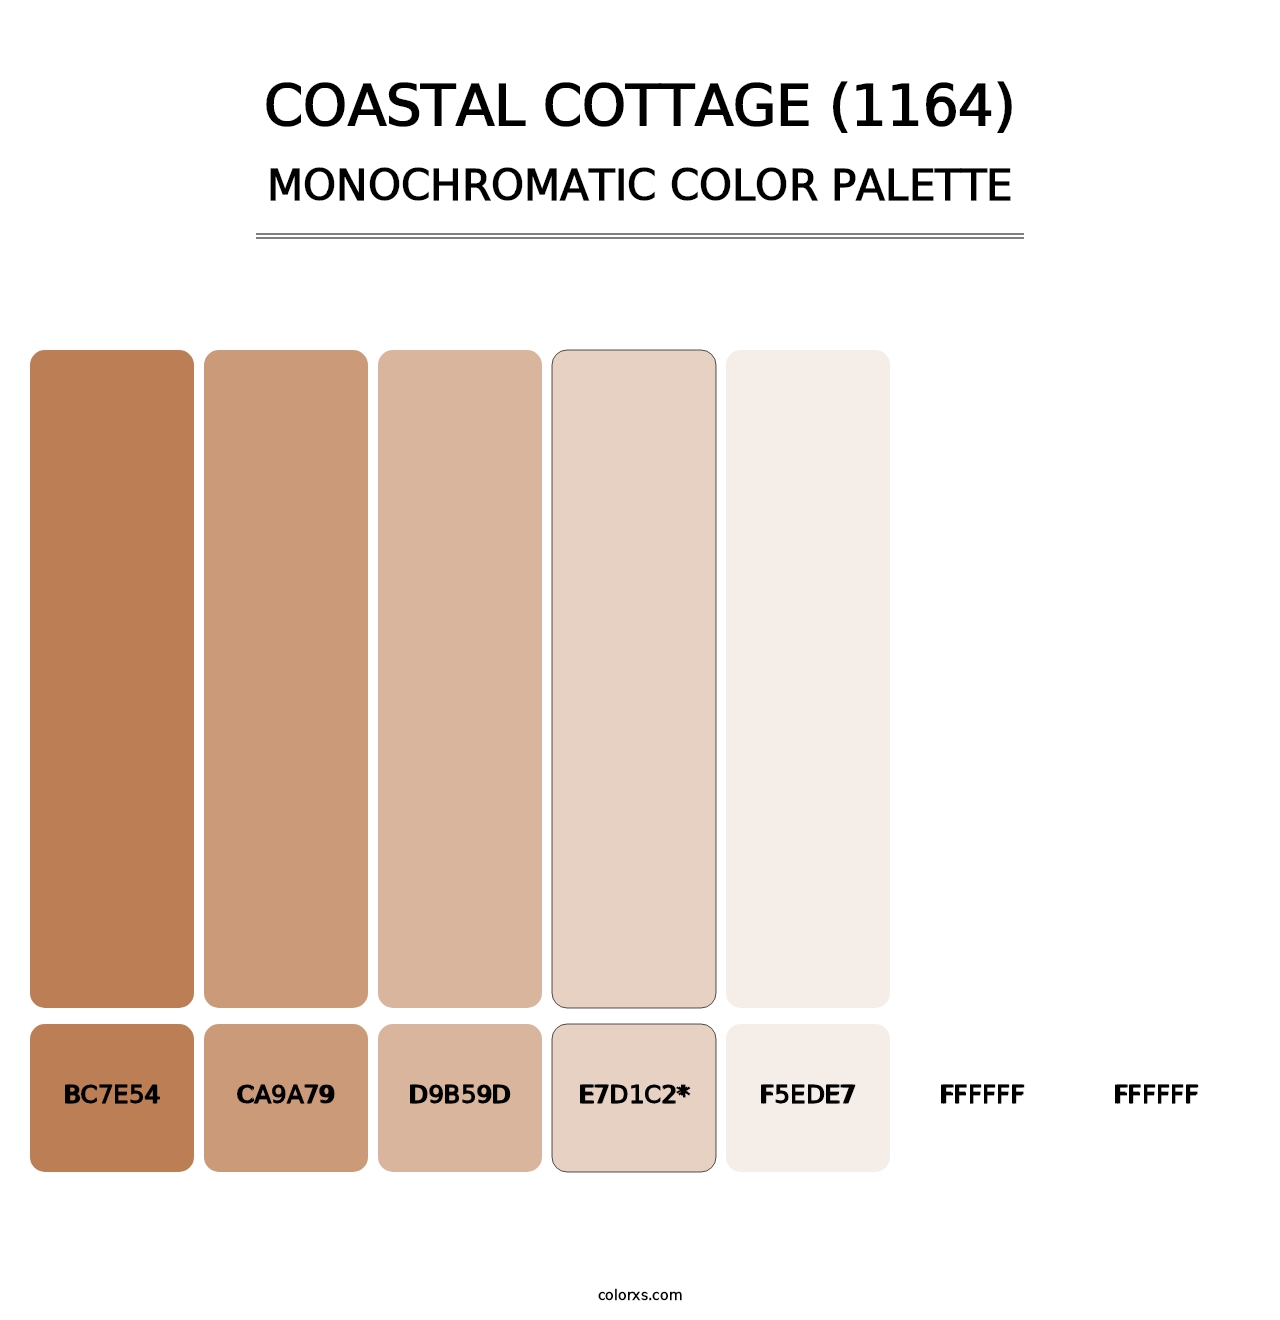 Coastal Cottage (1164) - Monochromatic Color Palette